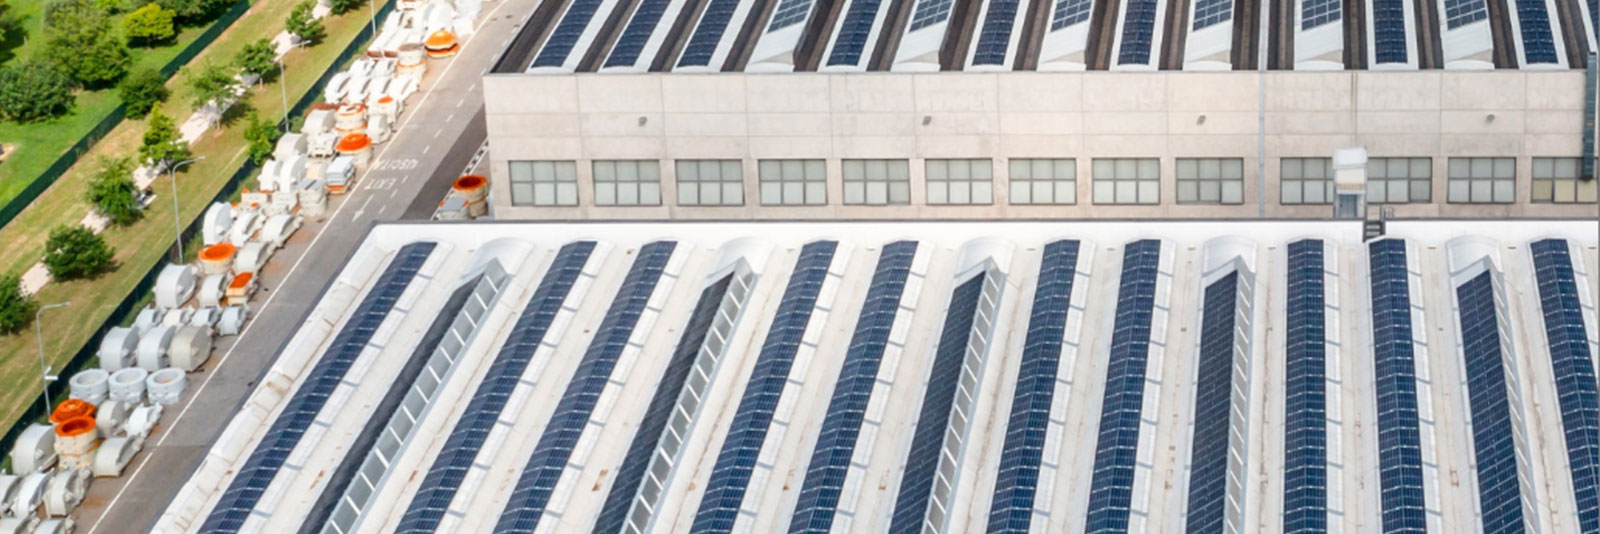 PROTESA realizza l’impianto fotovoltaico a copertura del sito della casa madre SACMI